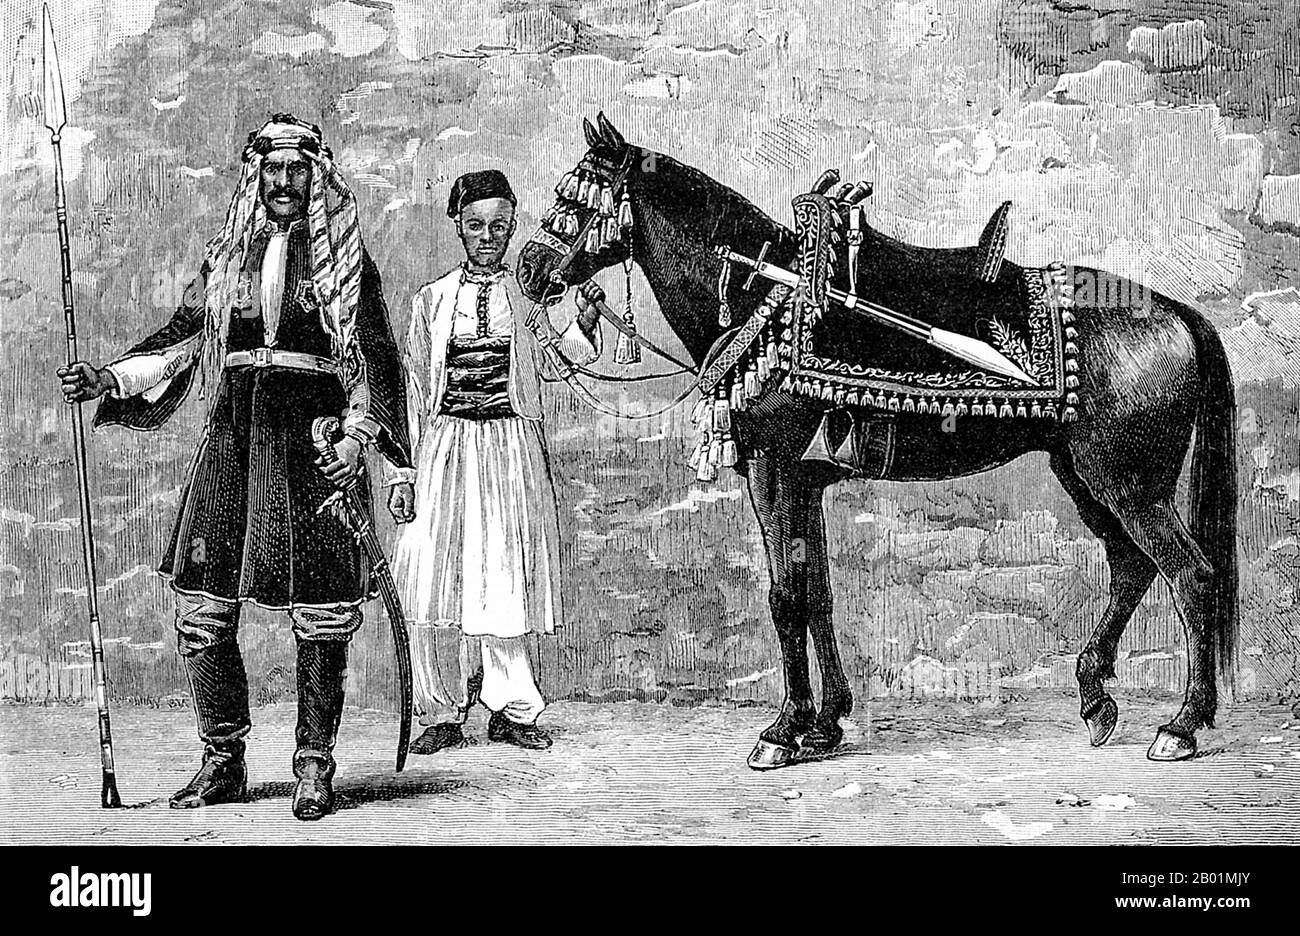 Sudan: Al-Zubayr Rahma Mansur Pasha (1830 - gennaio 1913) con il suo cavallo e un servitore. Incisione da "The Graphic", 26 aprile 1884. Al-Zubayr Rahma Mansur, noto anche come Sebehr Rahma o Rahama Zobeir, era un mercante di schiavi arabo sudanese alla fine del XIX secolo. In seguito divenne governatore pascià e sudanese. La sua reputazione come nemesi del generale Charles Gordon significava che gli fu conferito uno status quasi mitico in Inghilterra, dove fu definito "il più ricco e il peggiore", un "re degli schiavi" "che [aveva] leoni incatenati come parte della sua scorta". Foto Stock